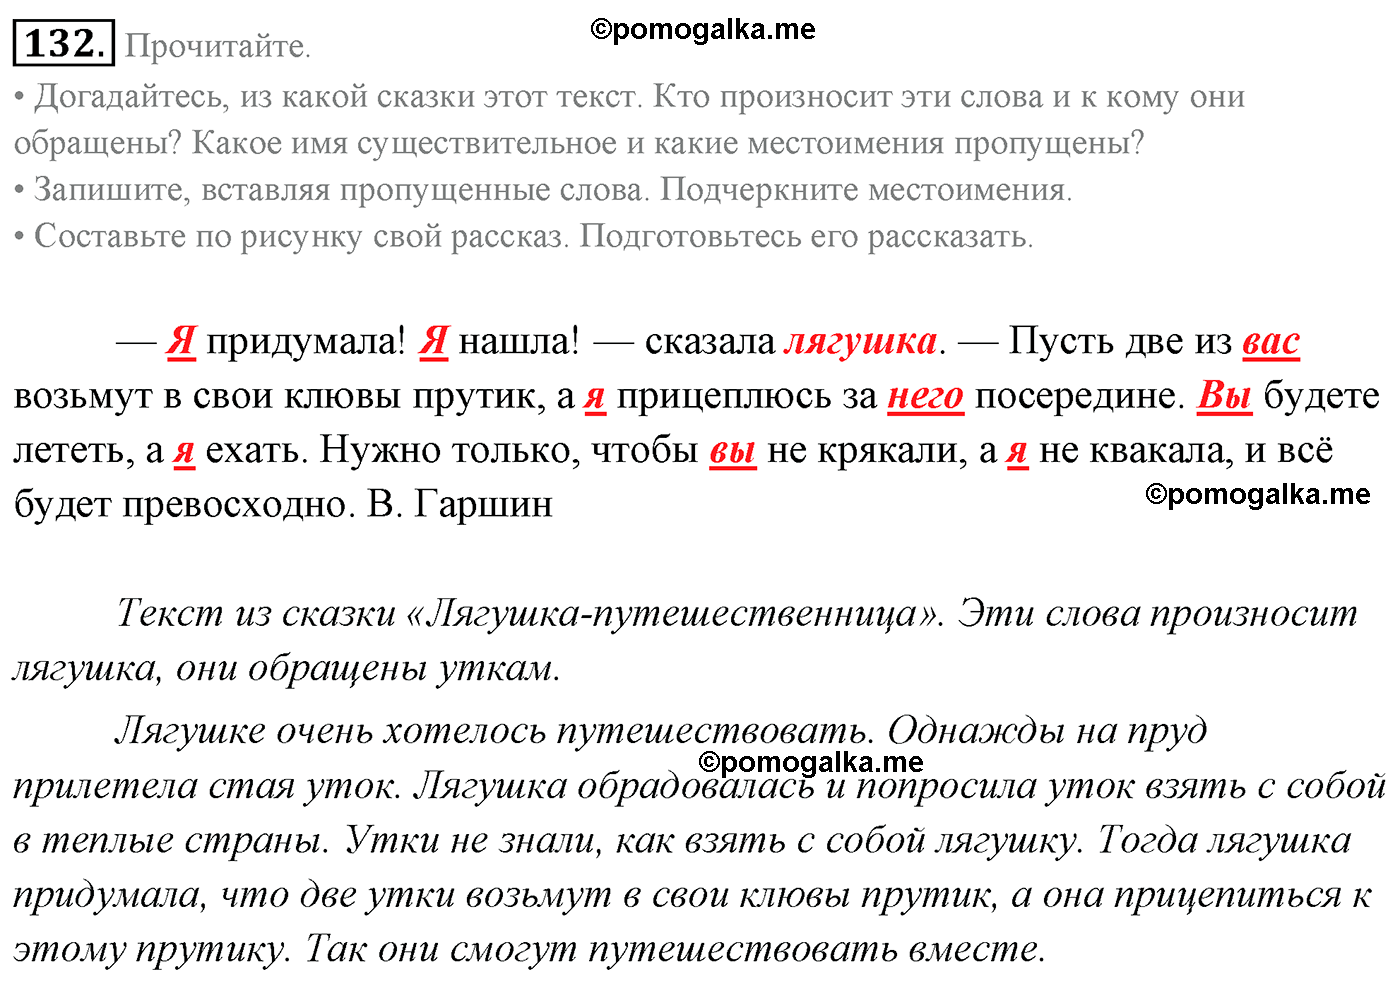 Русский язык стр 77 упр 132